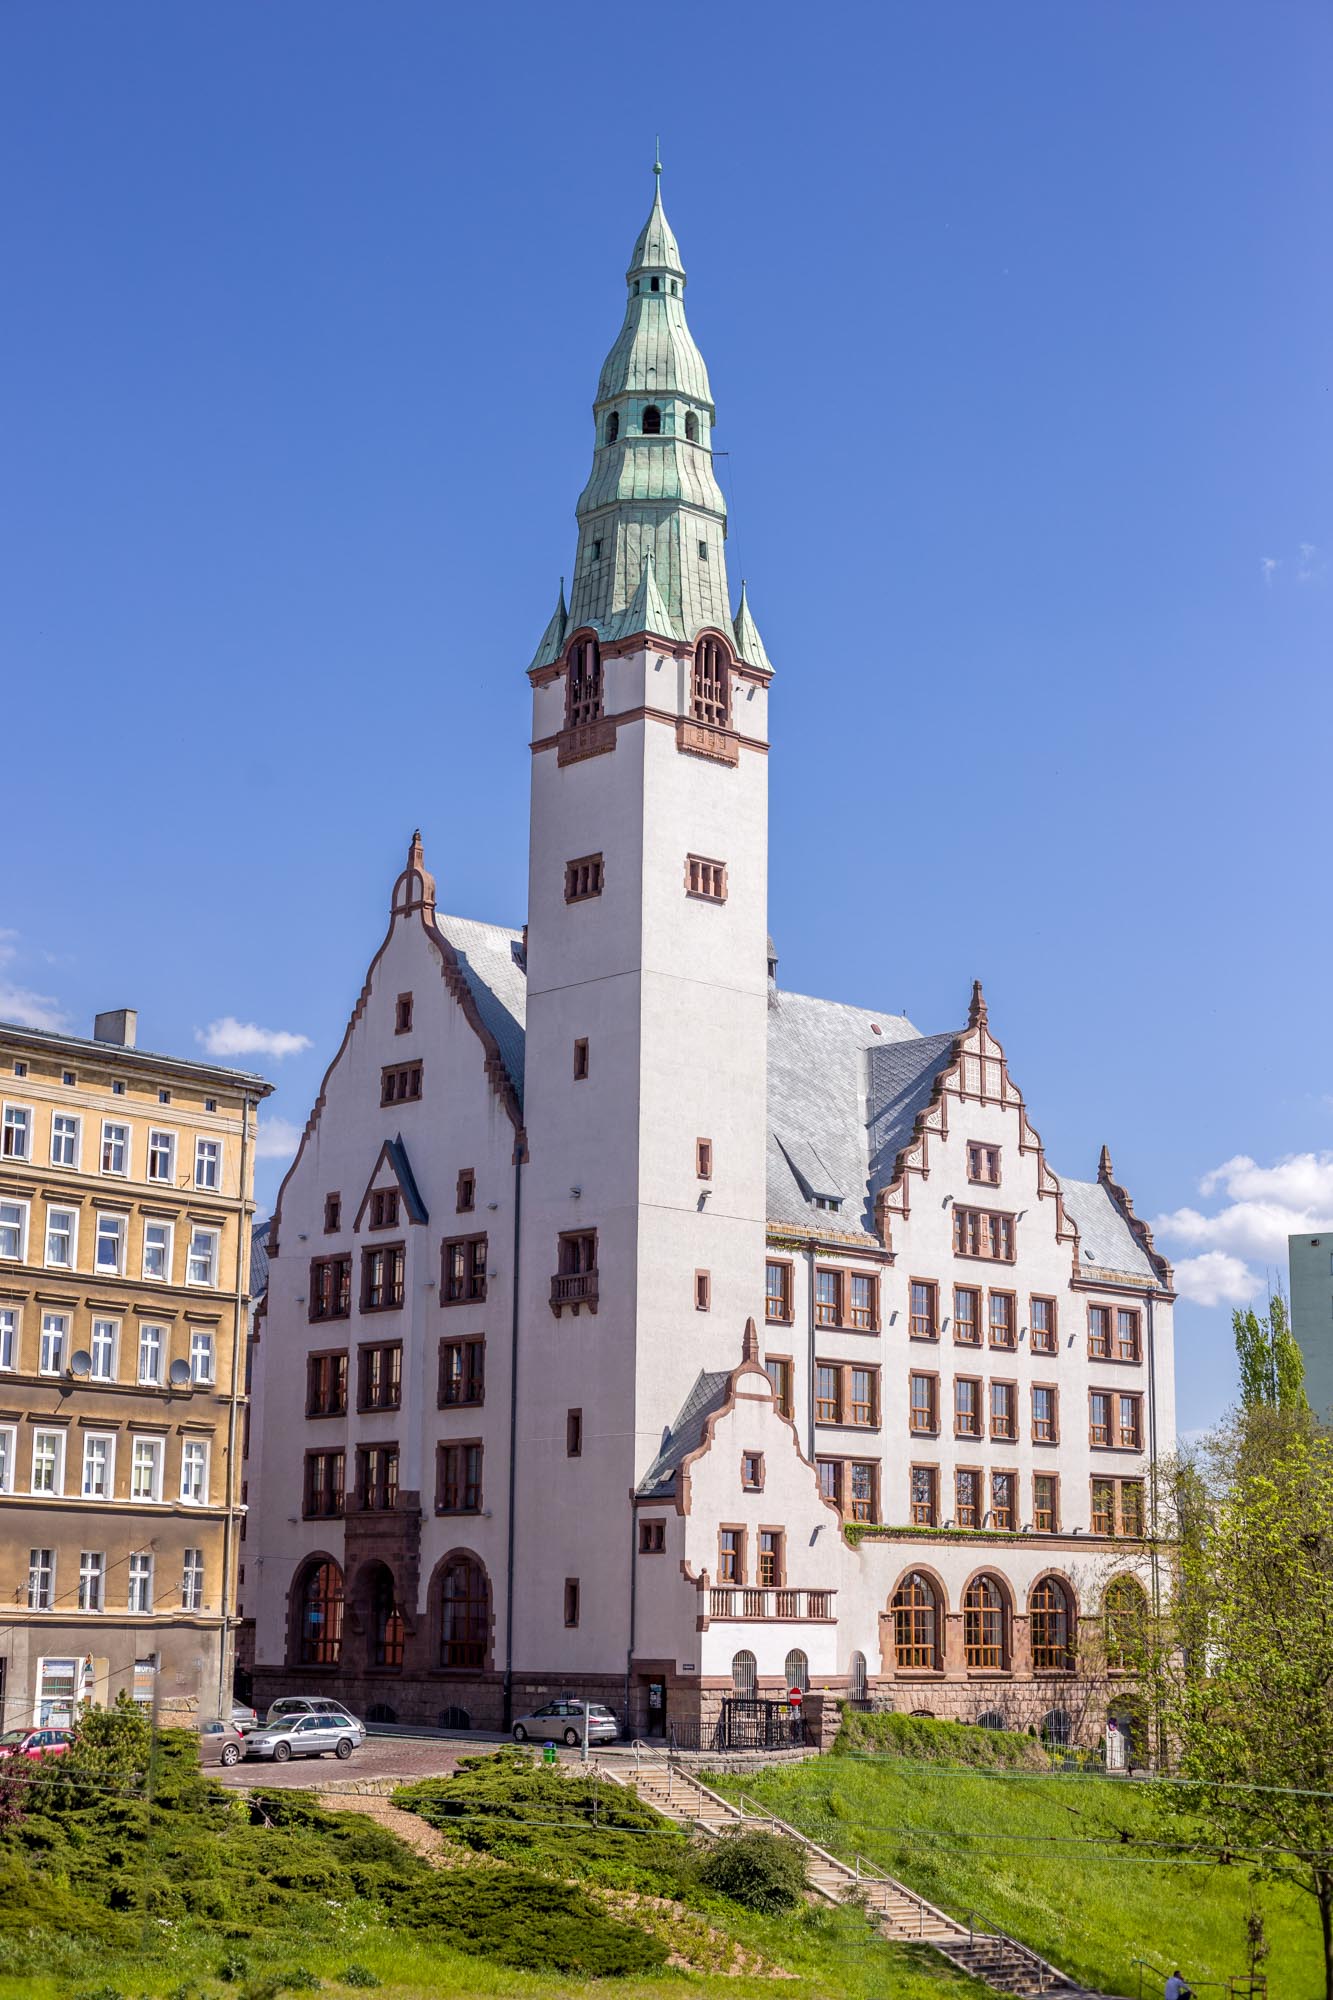 Turm in Stettin